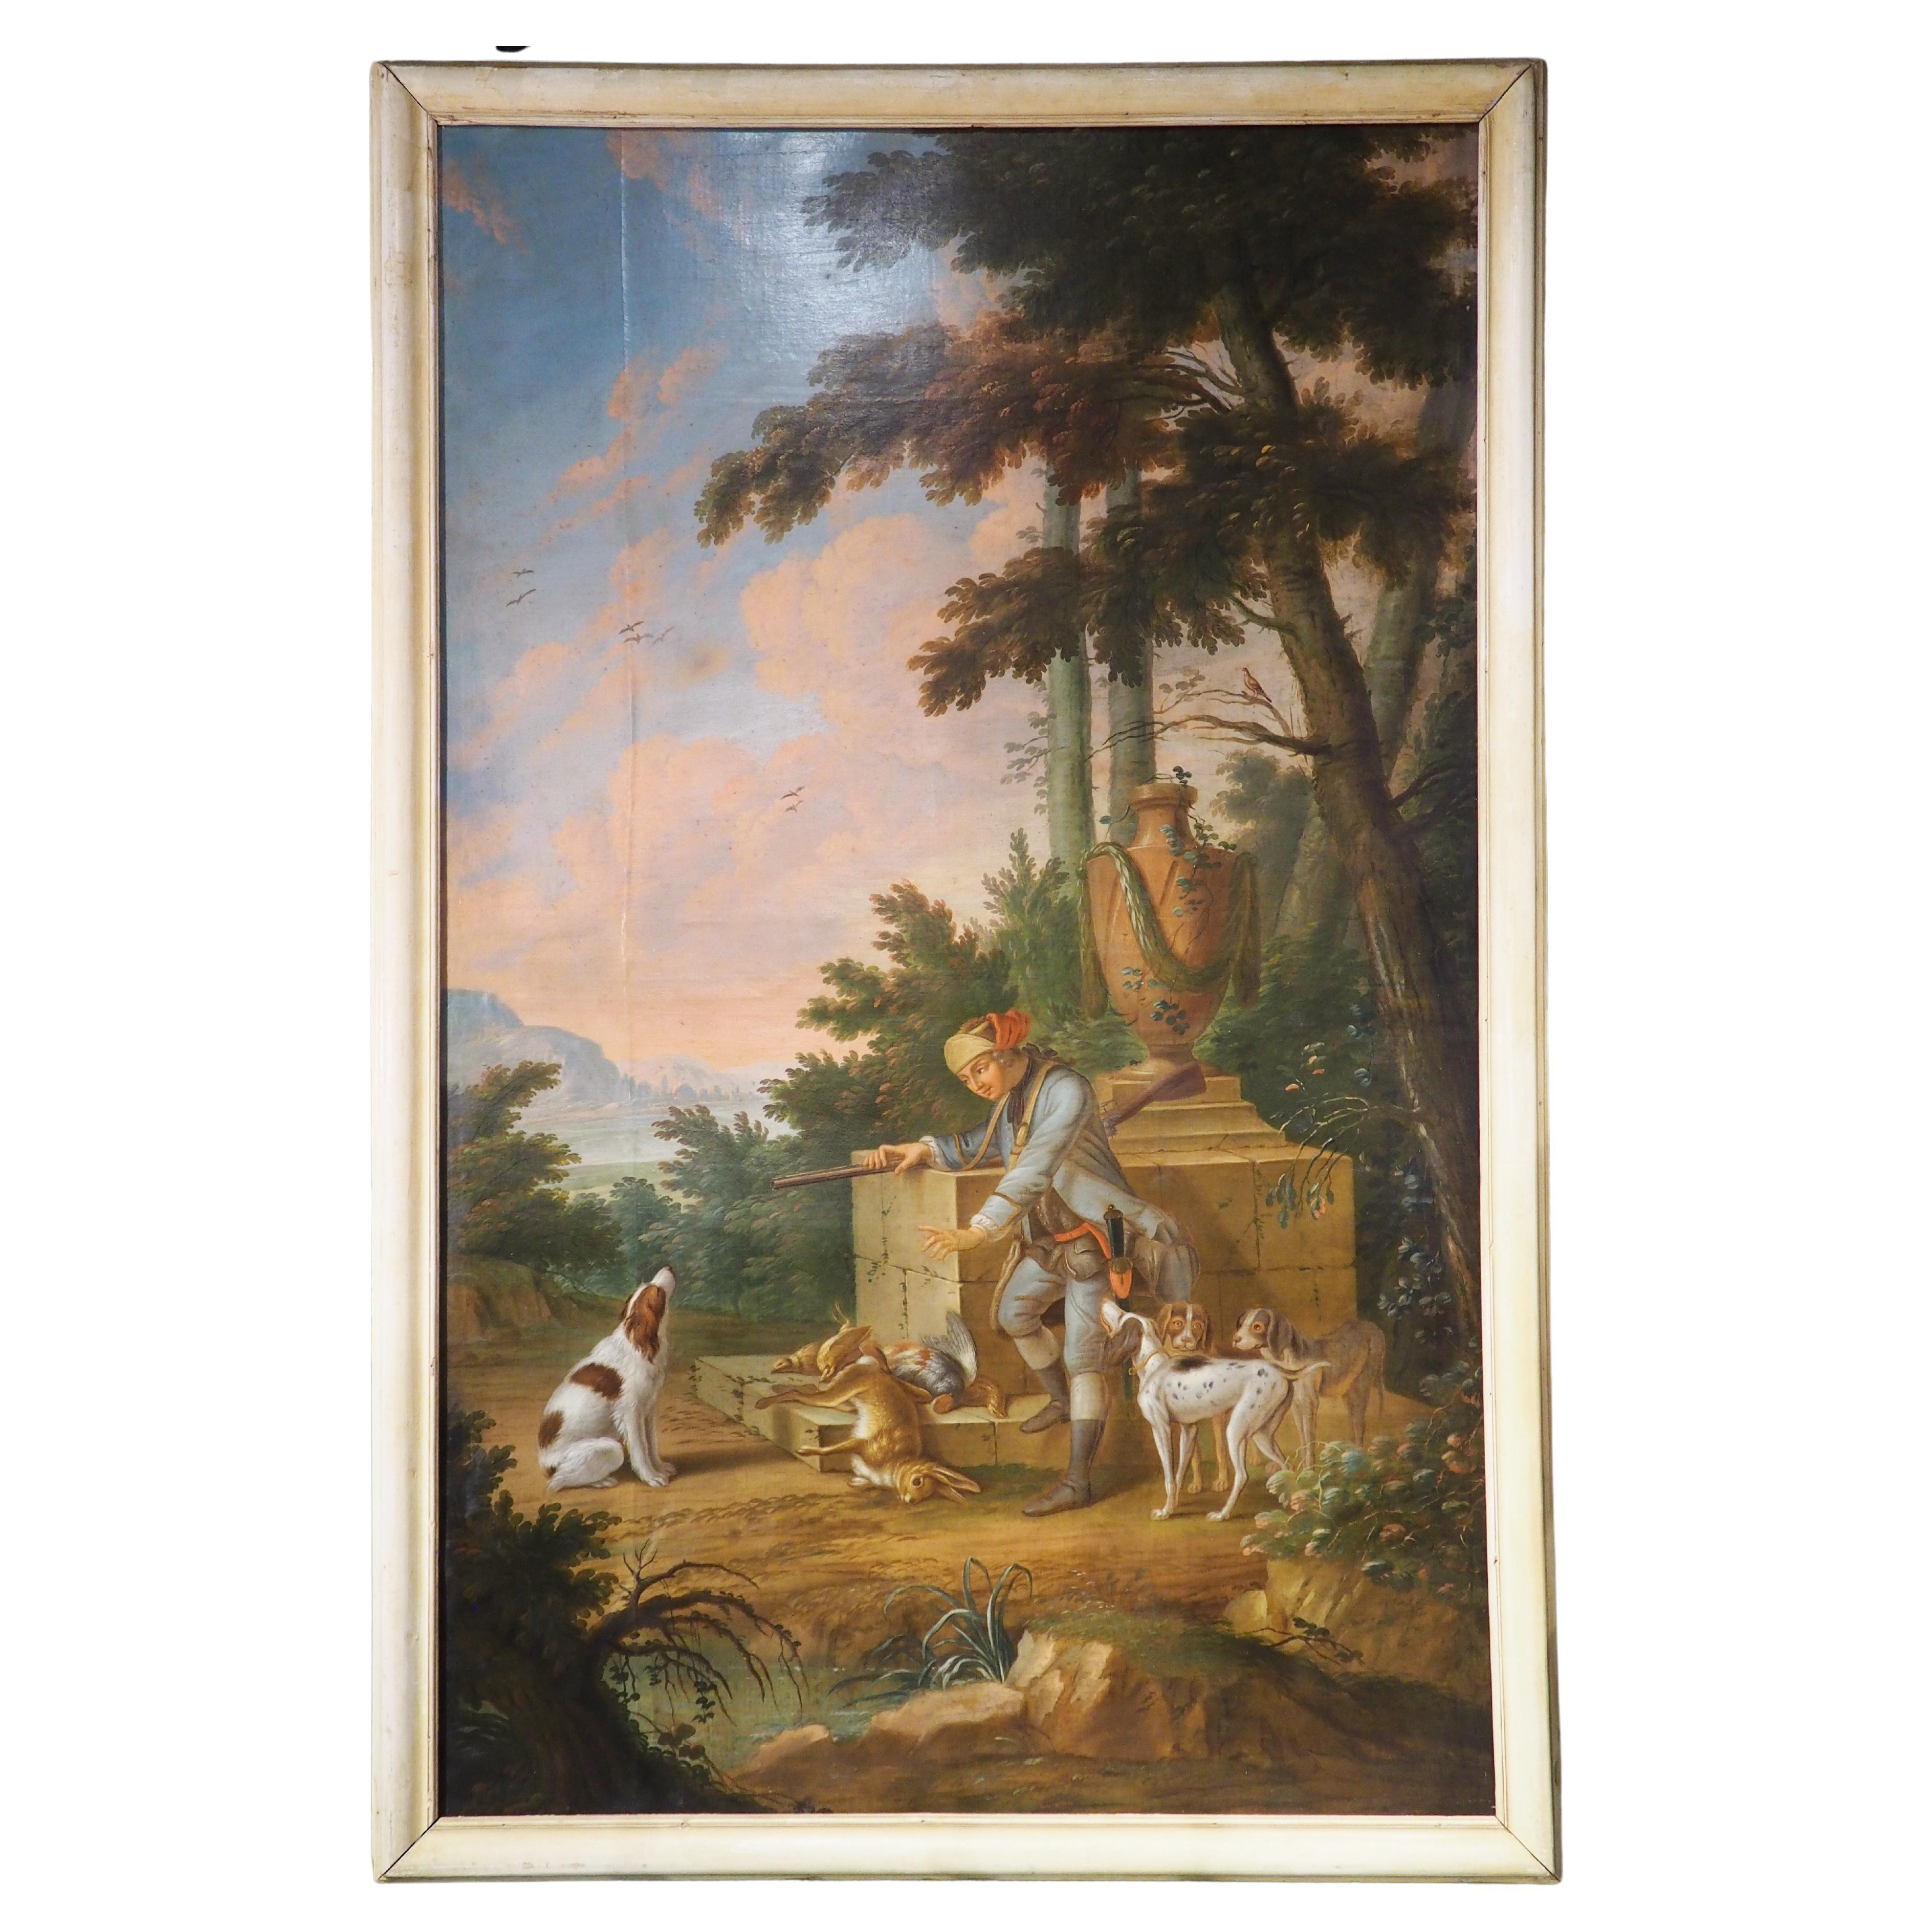 Grande peinture à l'huile sur toile française du 18ème siècle représentant une scène de chasse